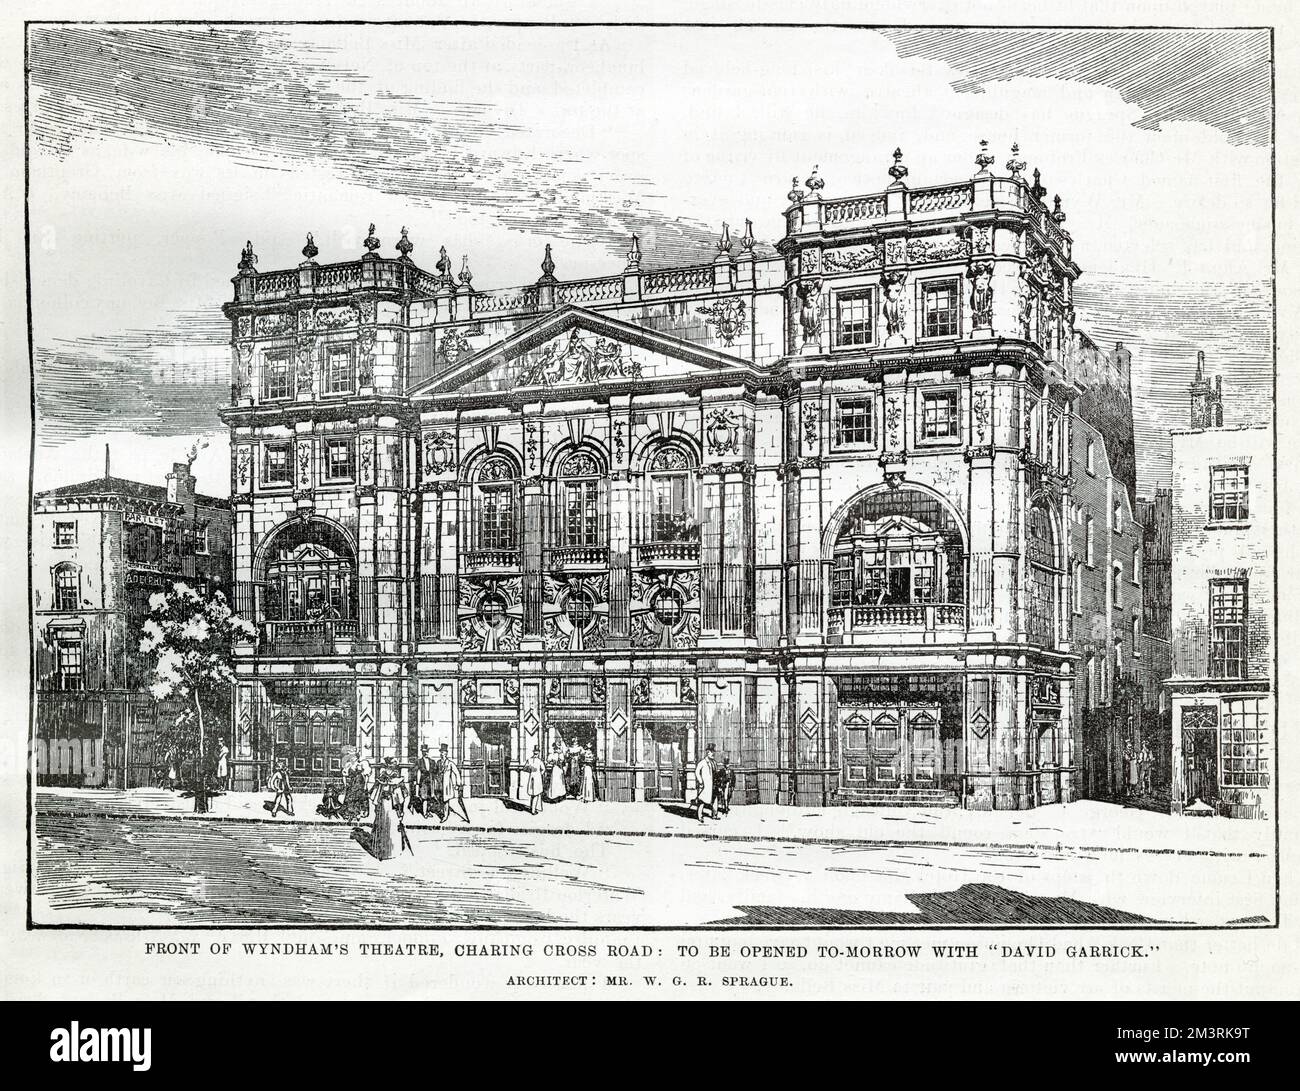 Di fronte al Wyndham's Theatre, Charing Cross Road, Londra progettato dall'architetto W. G. R. Sprague, aperto da Charles Wyndham nel 1899. Data: 1899 Foto Stock